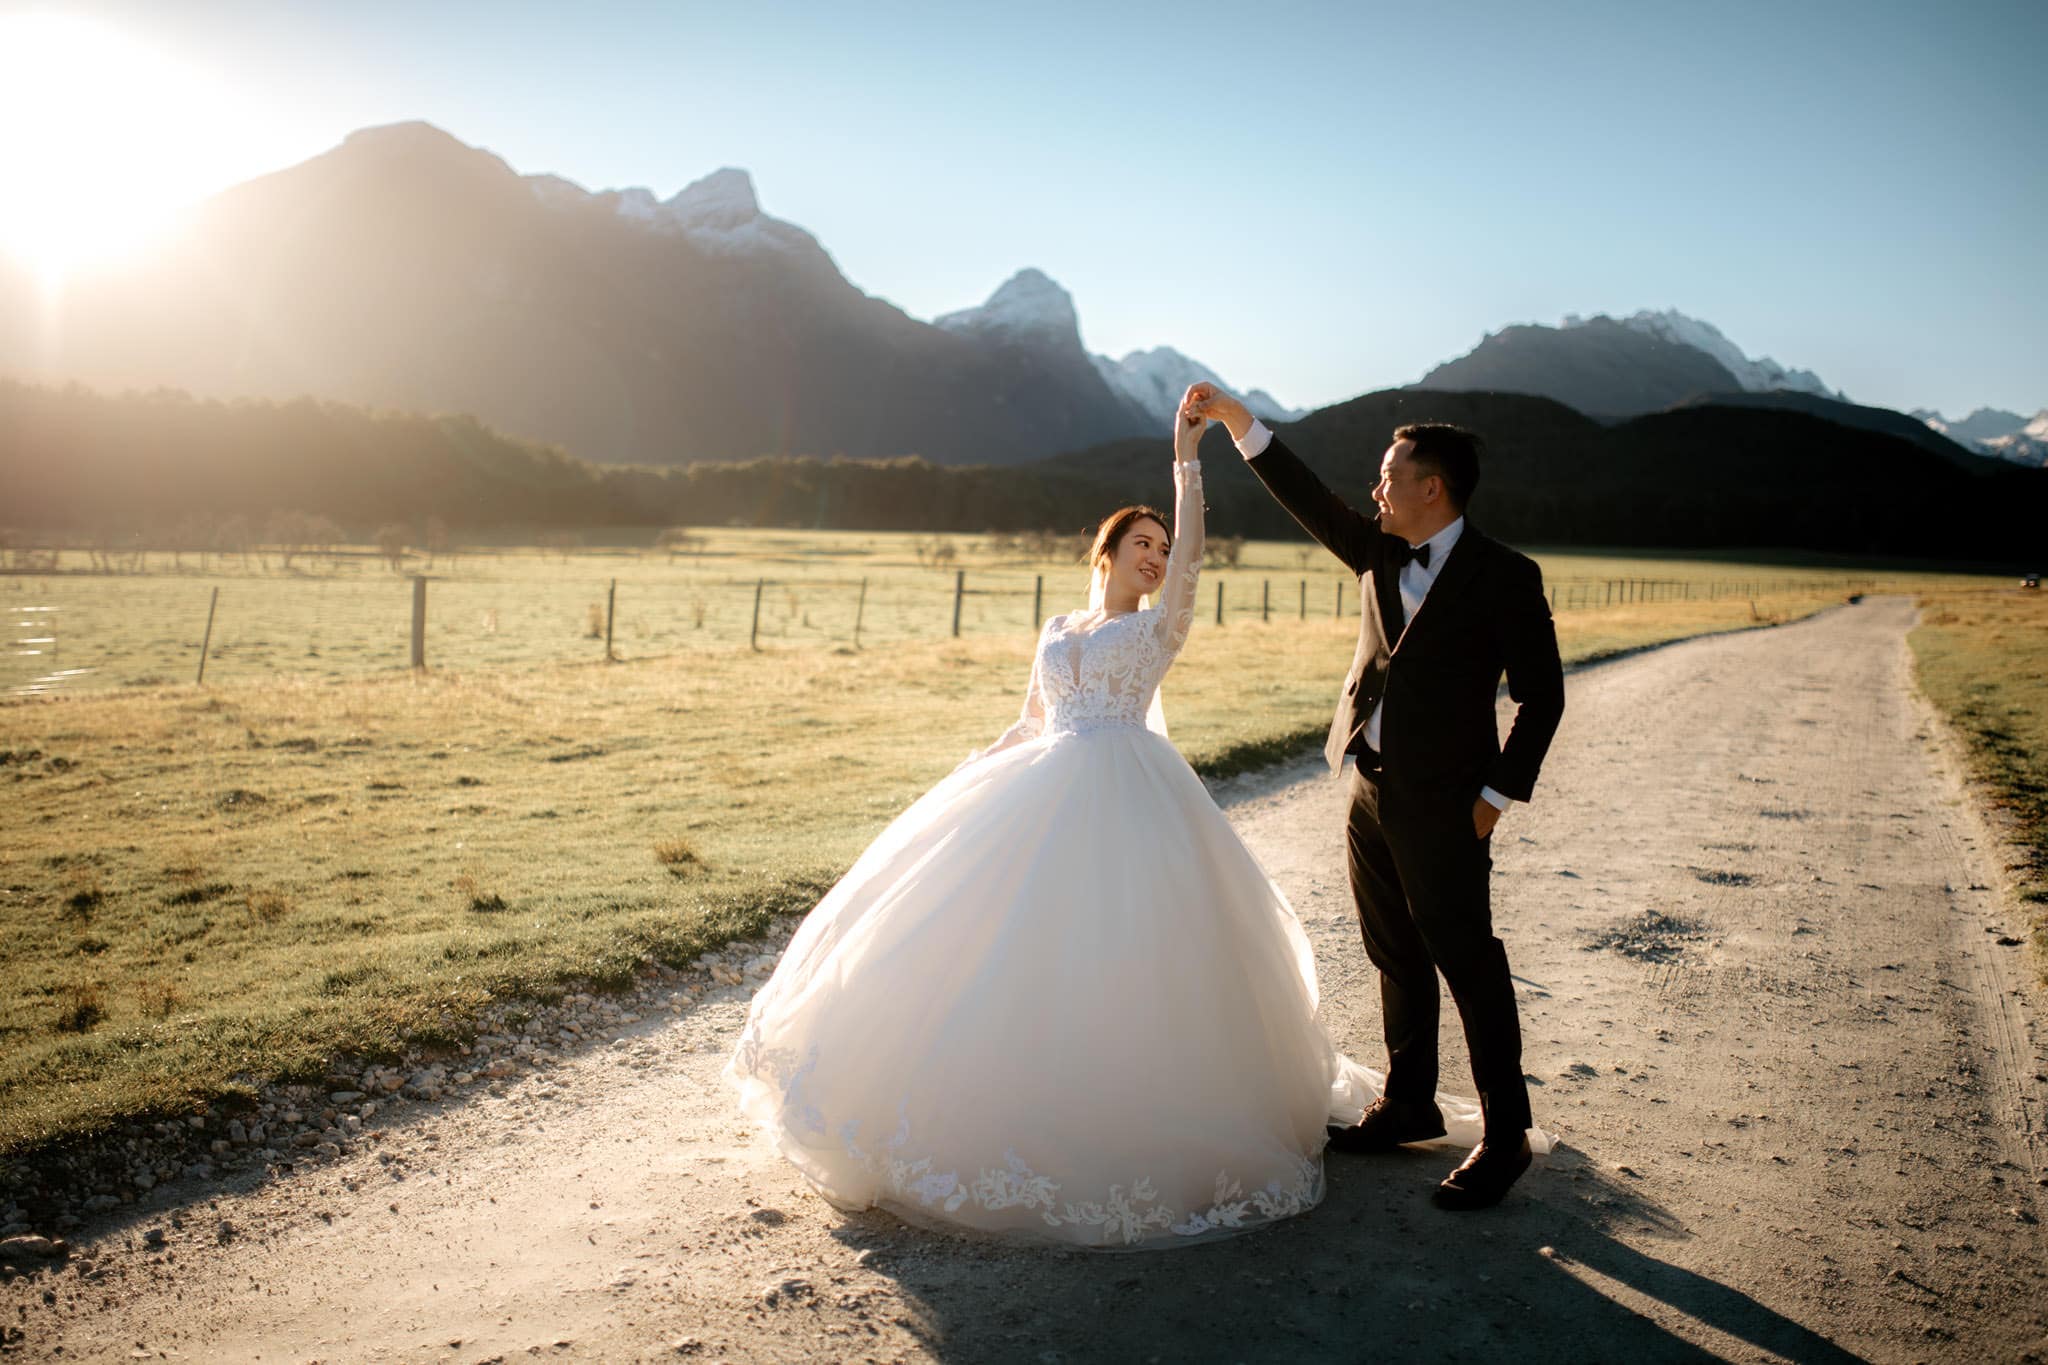 Alvis & Jess' Queenstown NZ Pre-Wedding Photoshoot